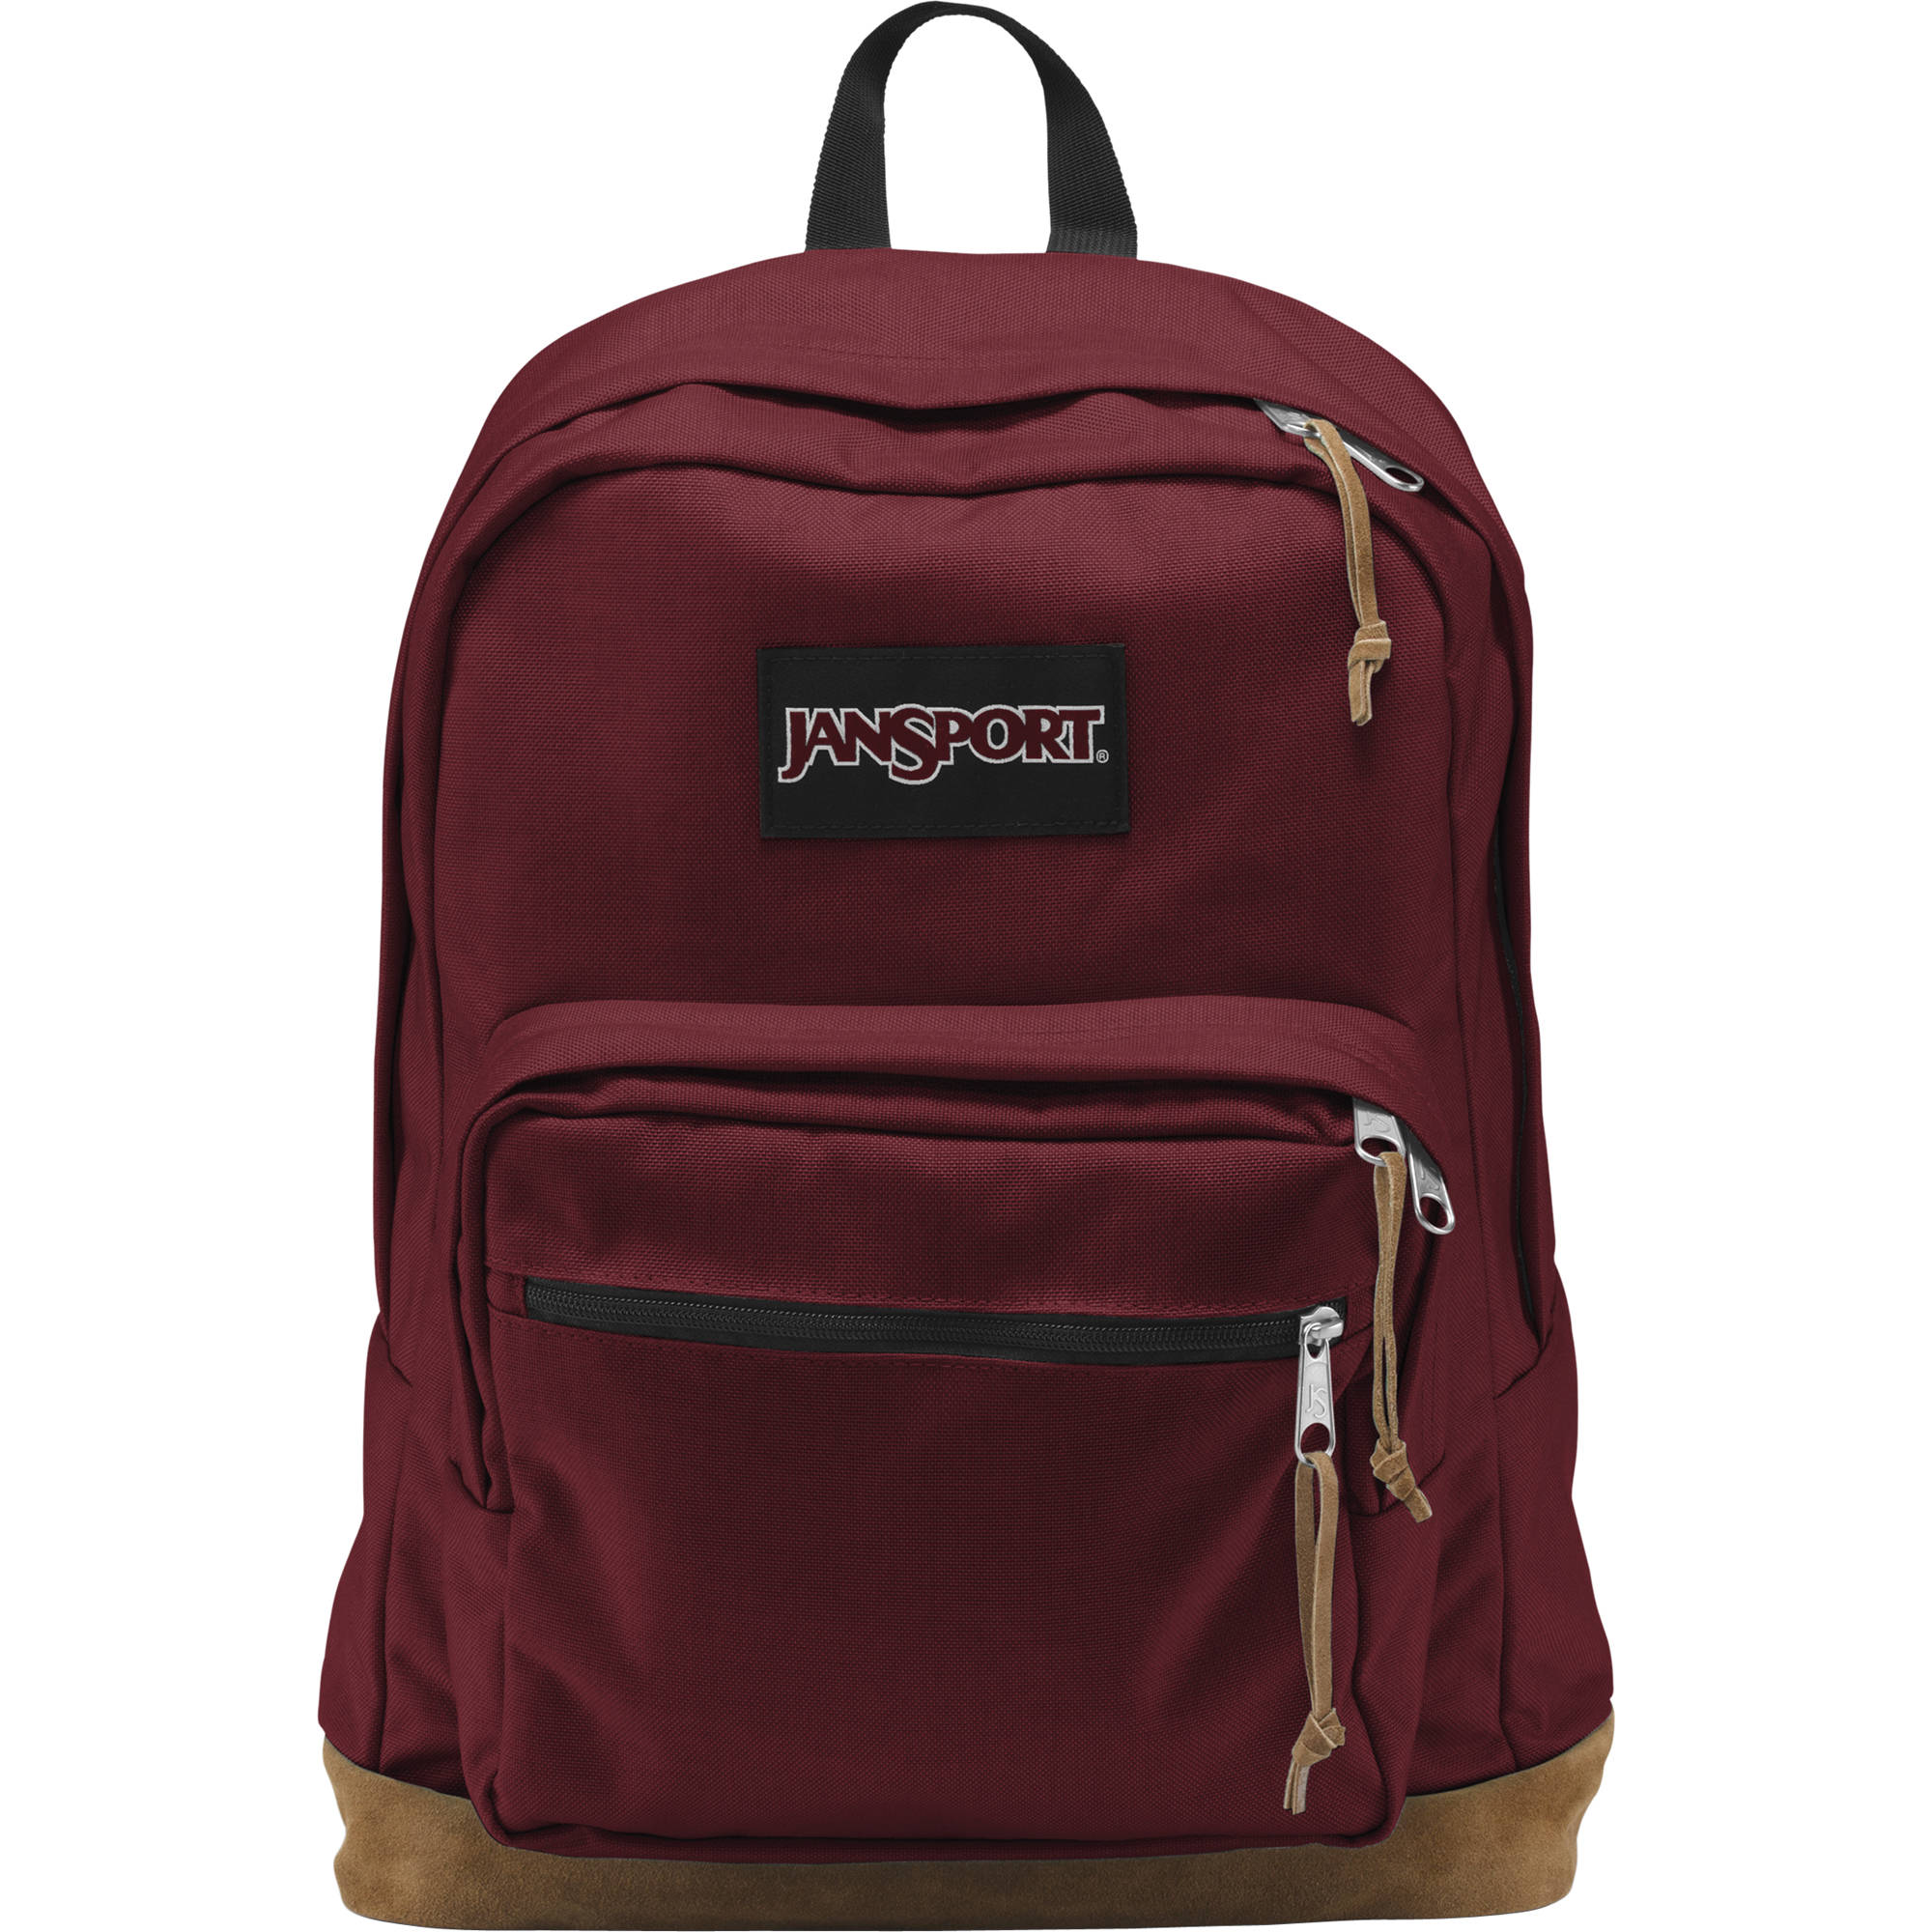 jansport computer backpack